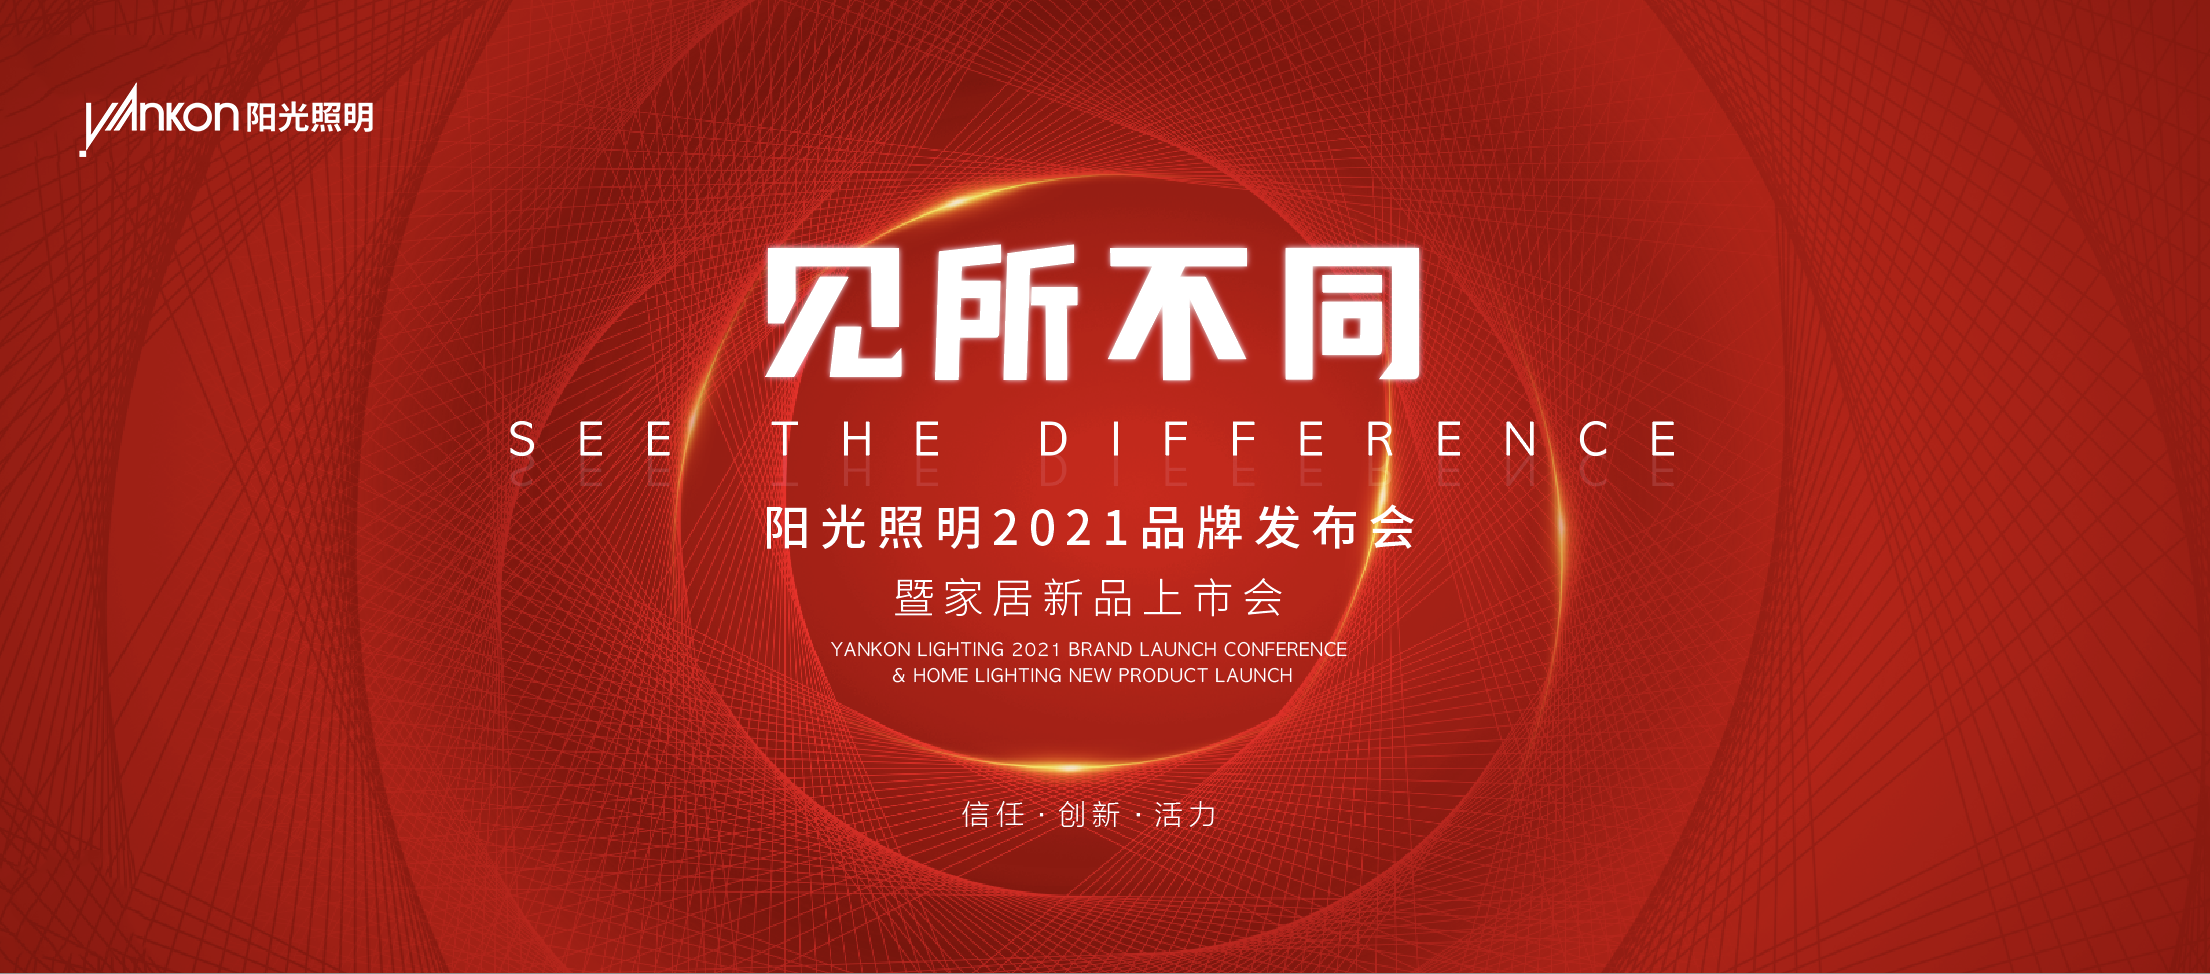 「见所不同」—— 热烈祝贺bat365在线平台(中文)官方网站2021品牌发布会暨家居新品上市会圆满成功！